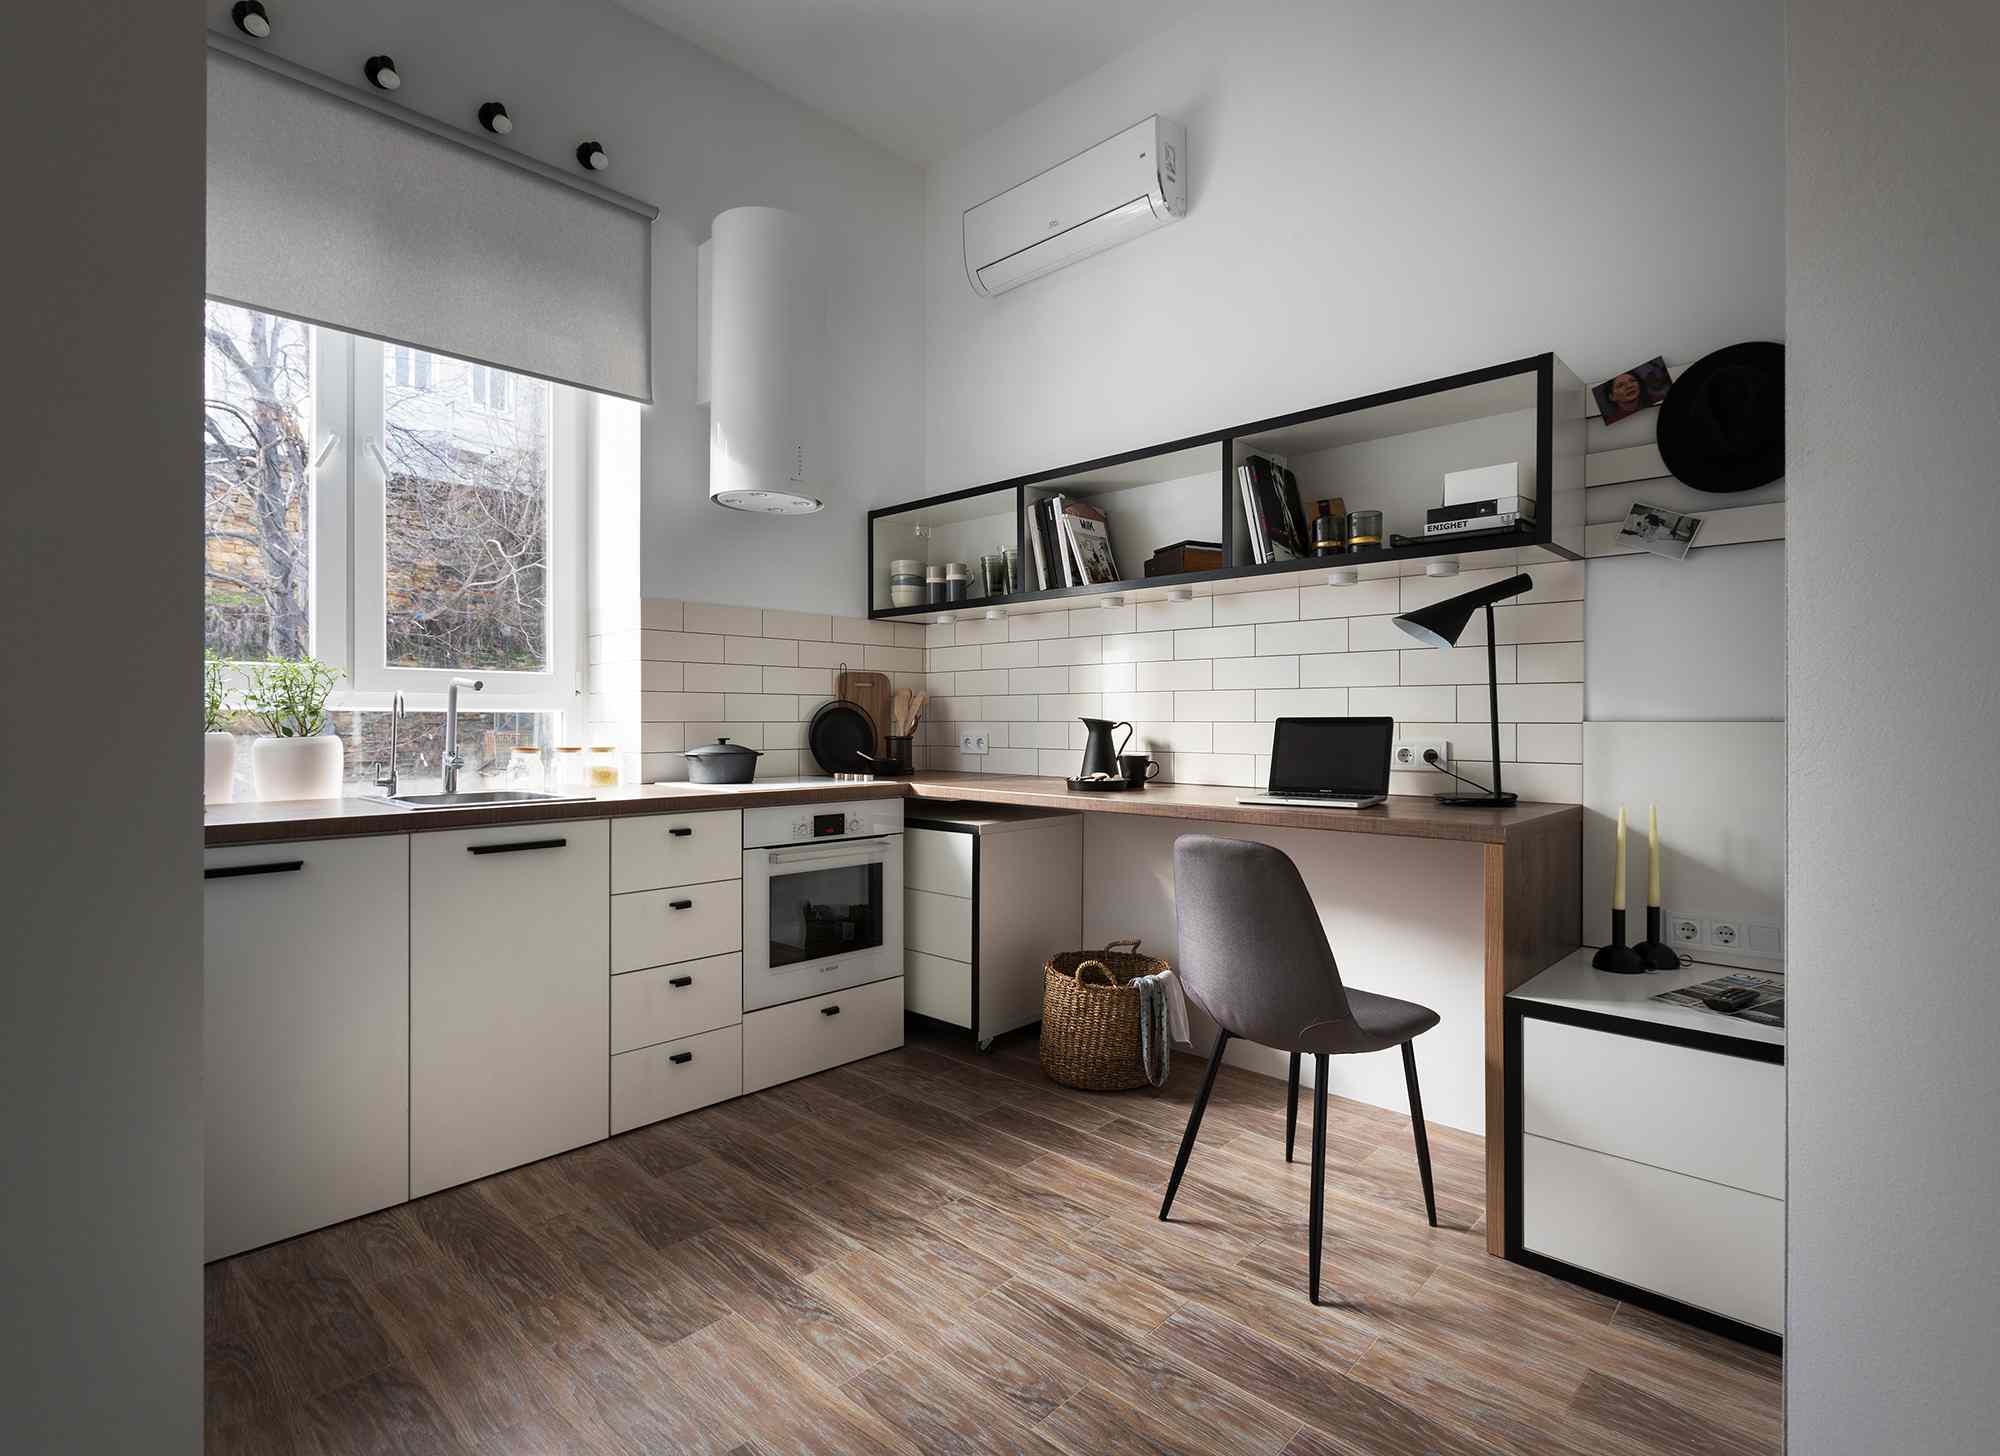 奥德萨微型公寓翻新Fateeva设计从入口看到的室内景观